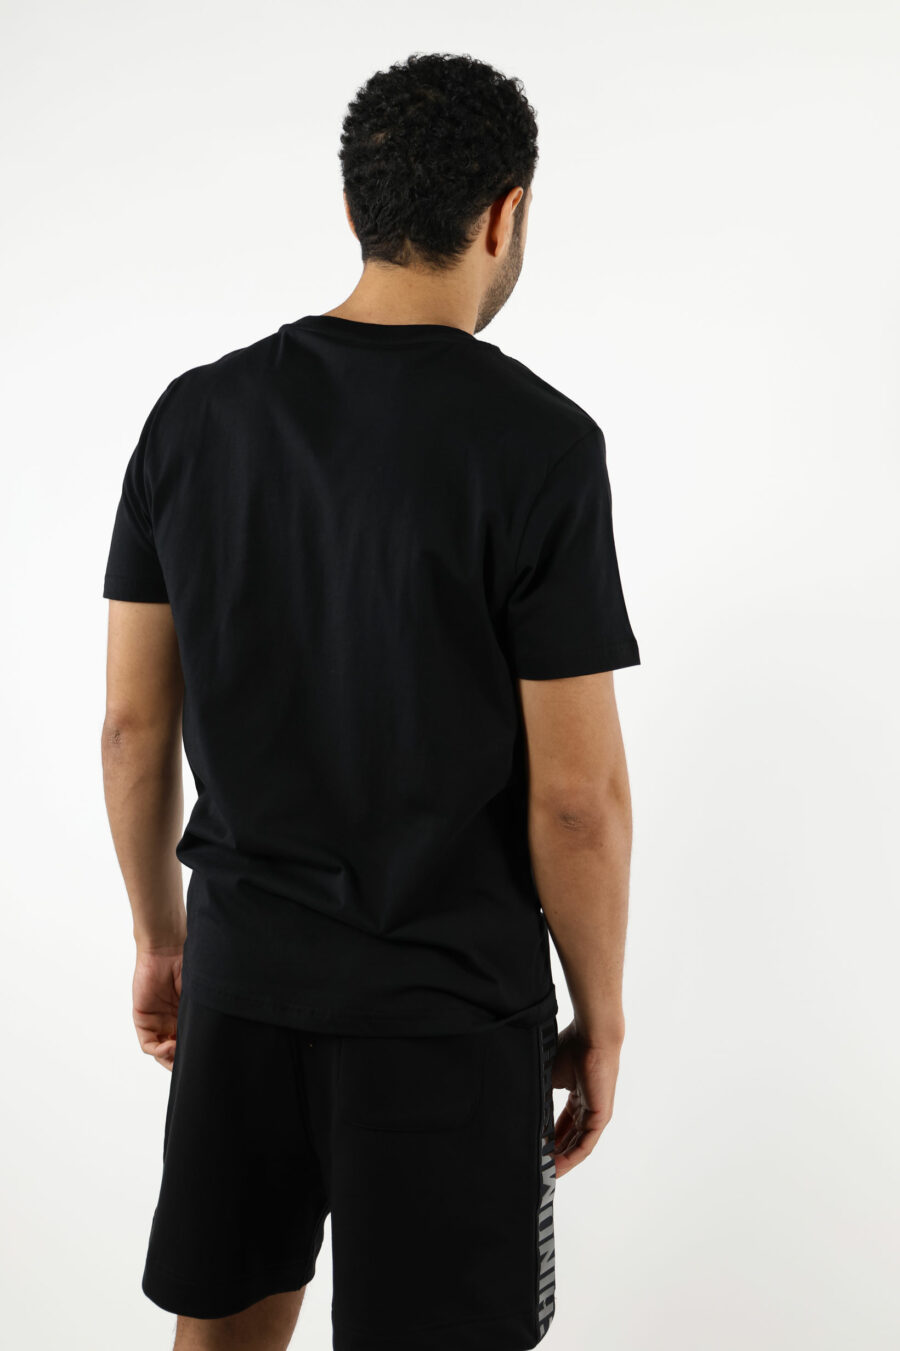 T-shirt noir avec logo en caoutchouc monochrome sur les épaules - 111048